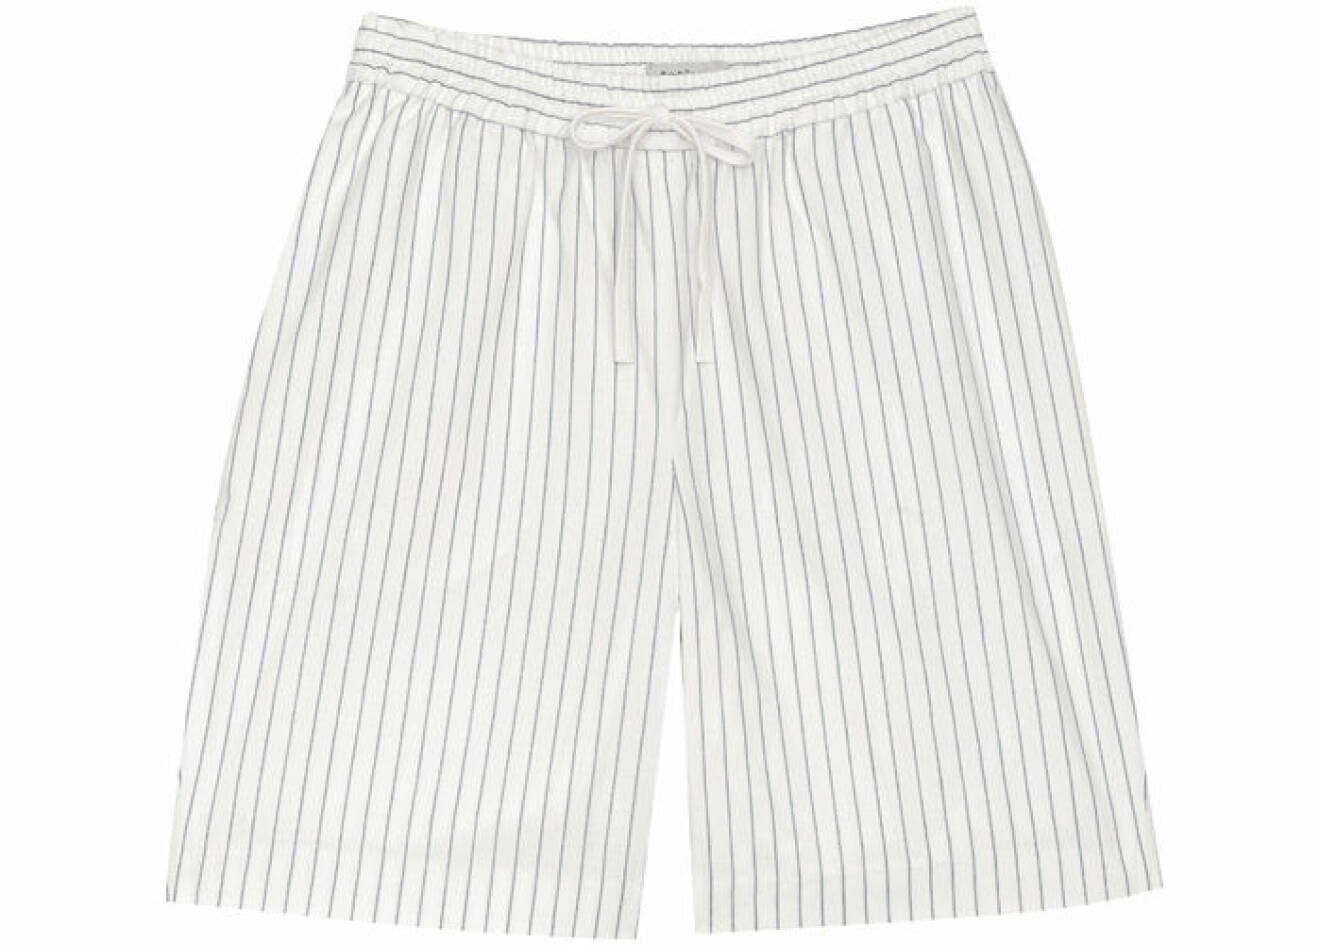 15. Shorts, 1800 kr, Toteme